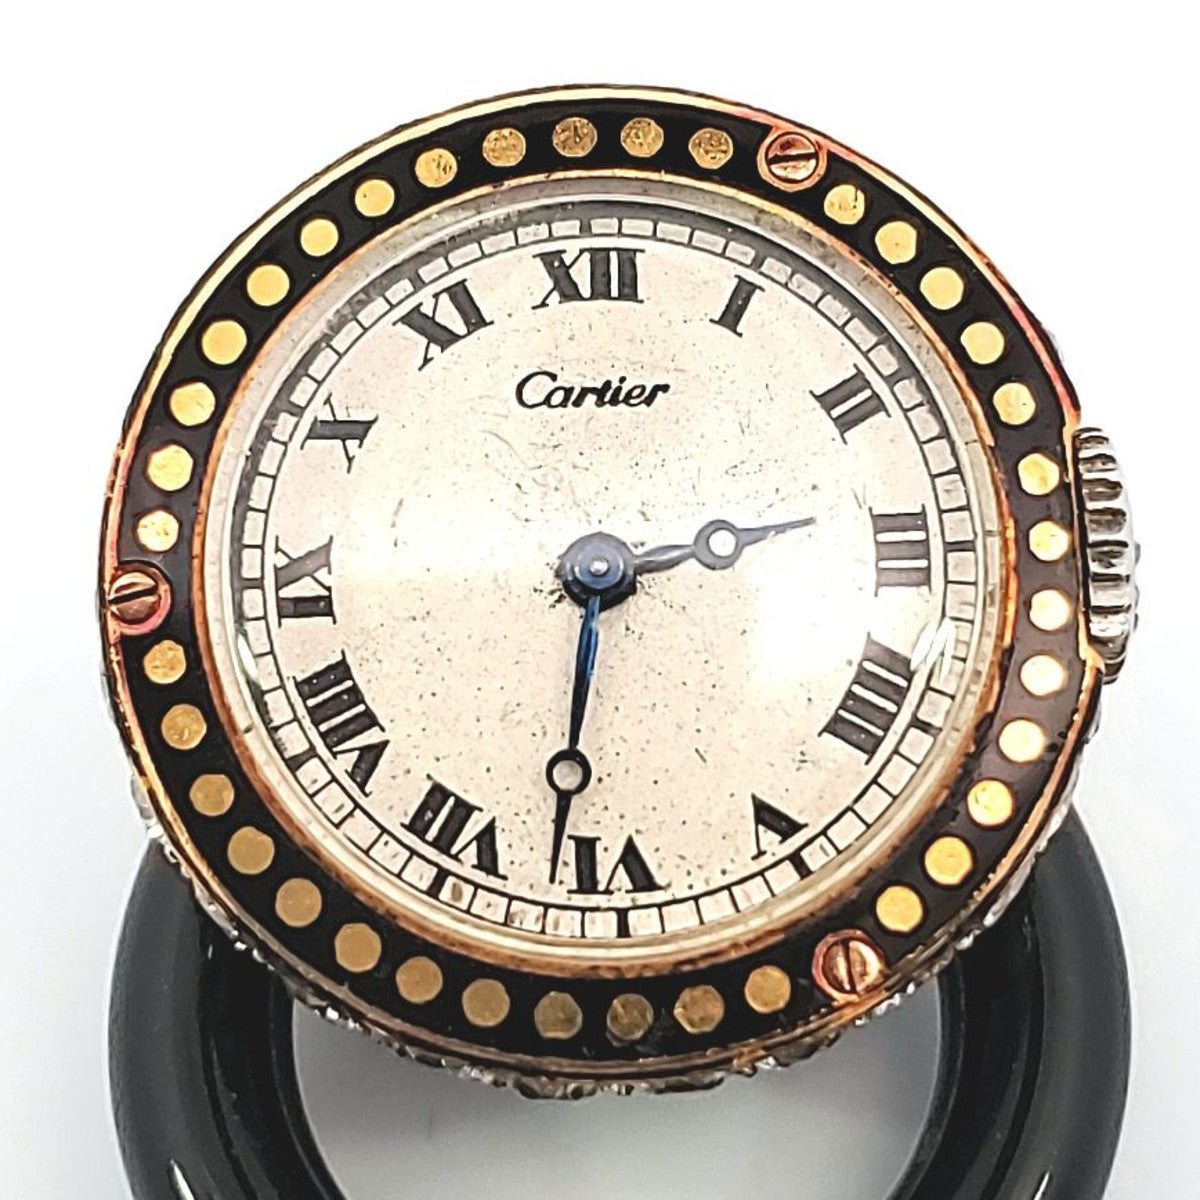 Cartier Paris Art Deco Platinum & 18KT Yellow Gold Diamond, Enamel & Onyx "Cachet" Watch Brooch close-up of watch face